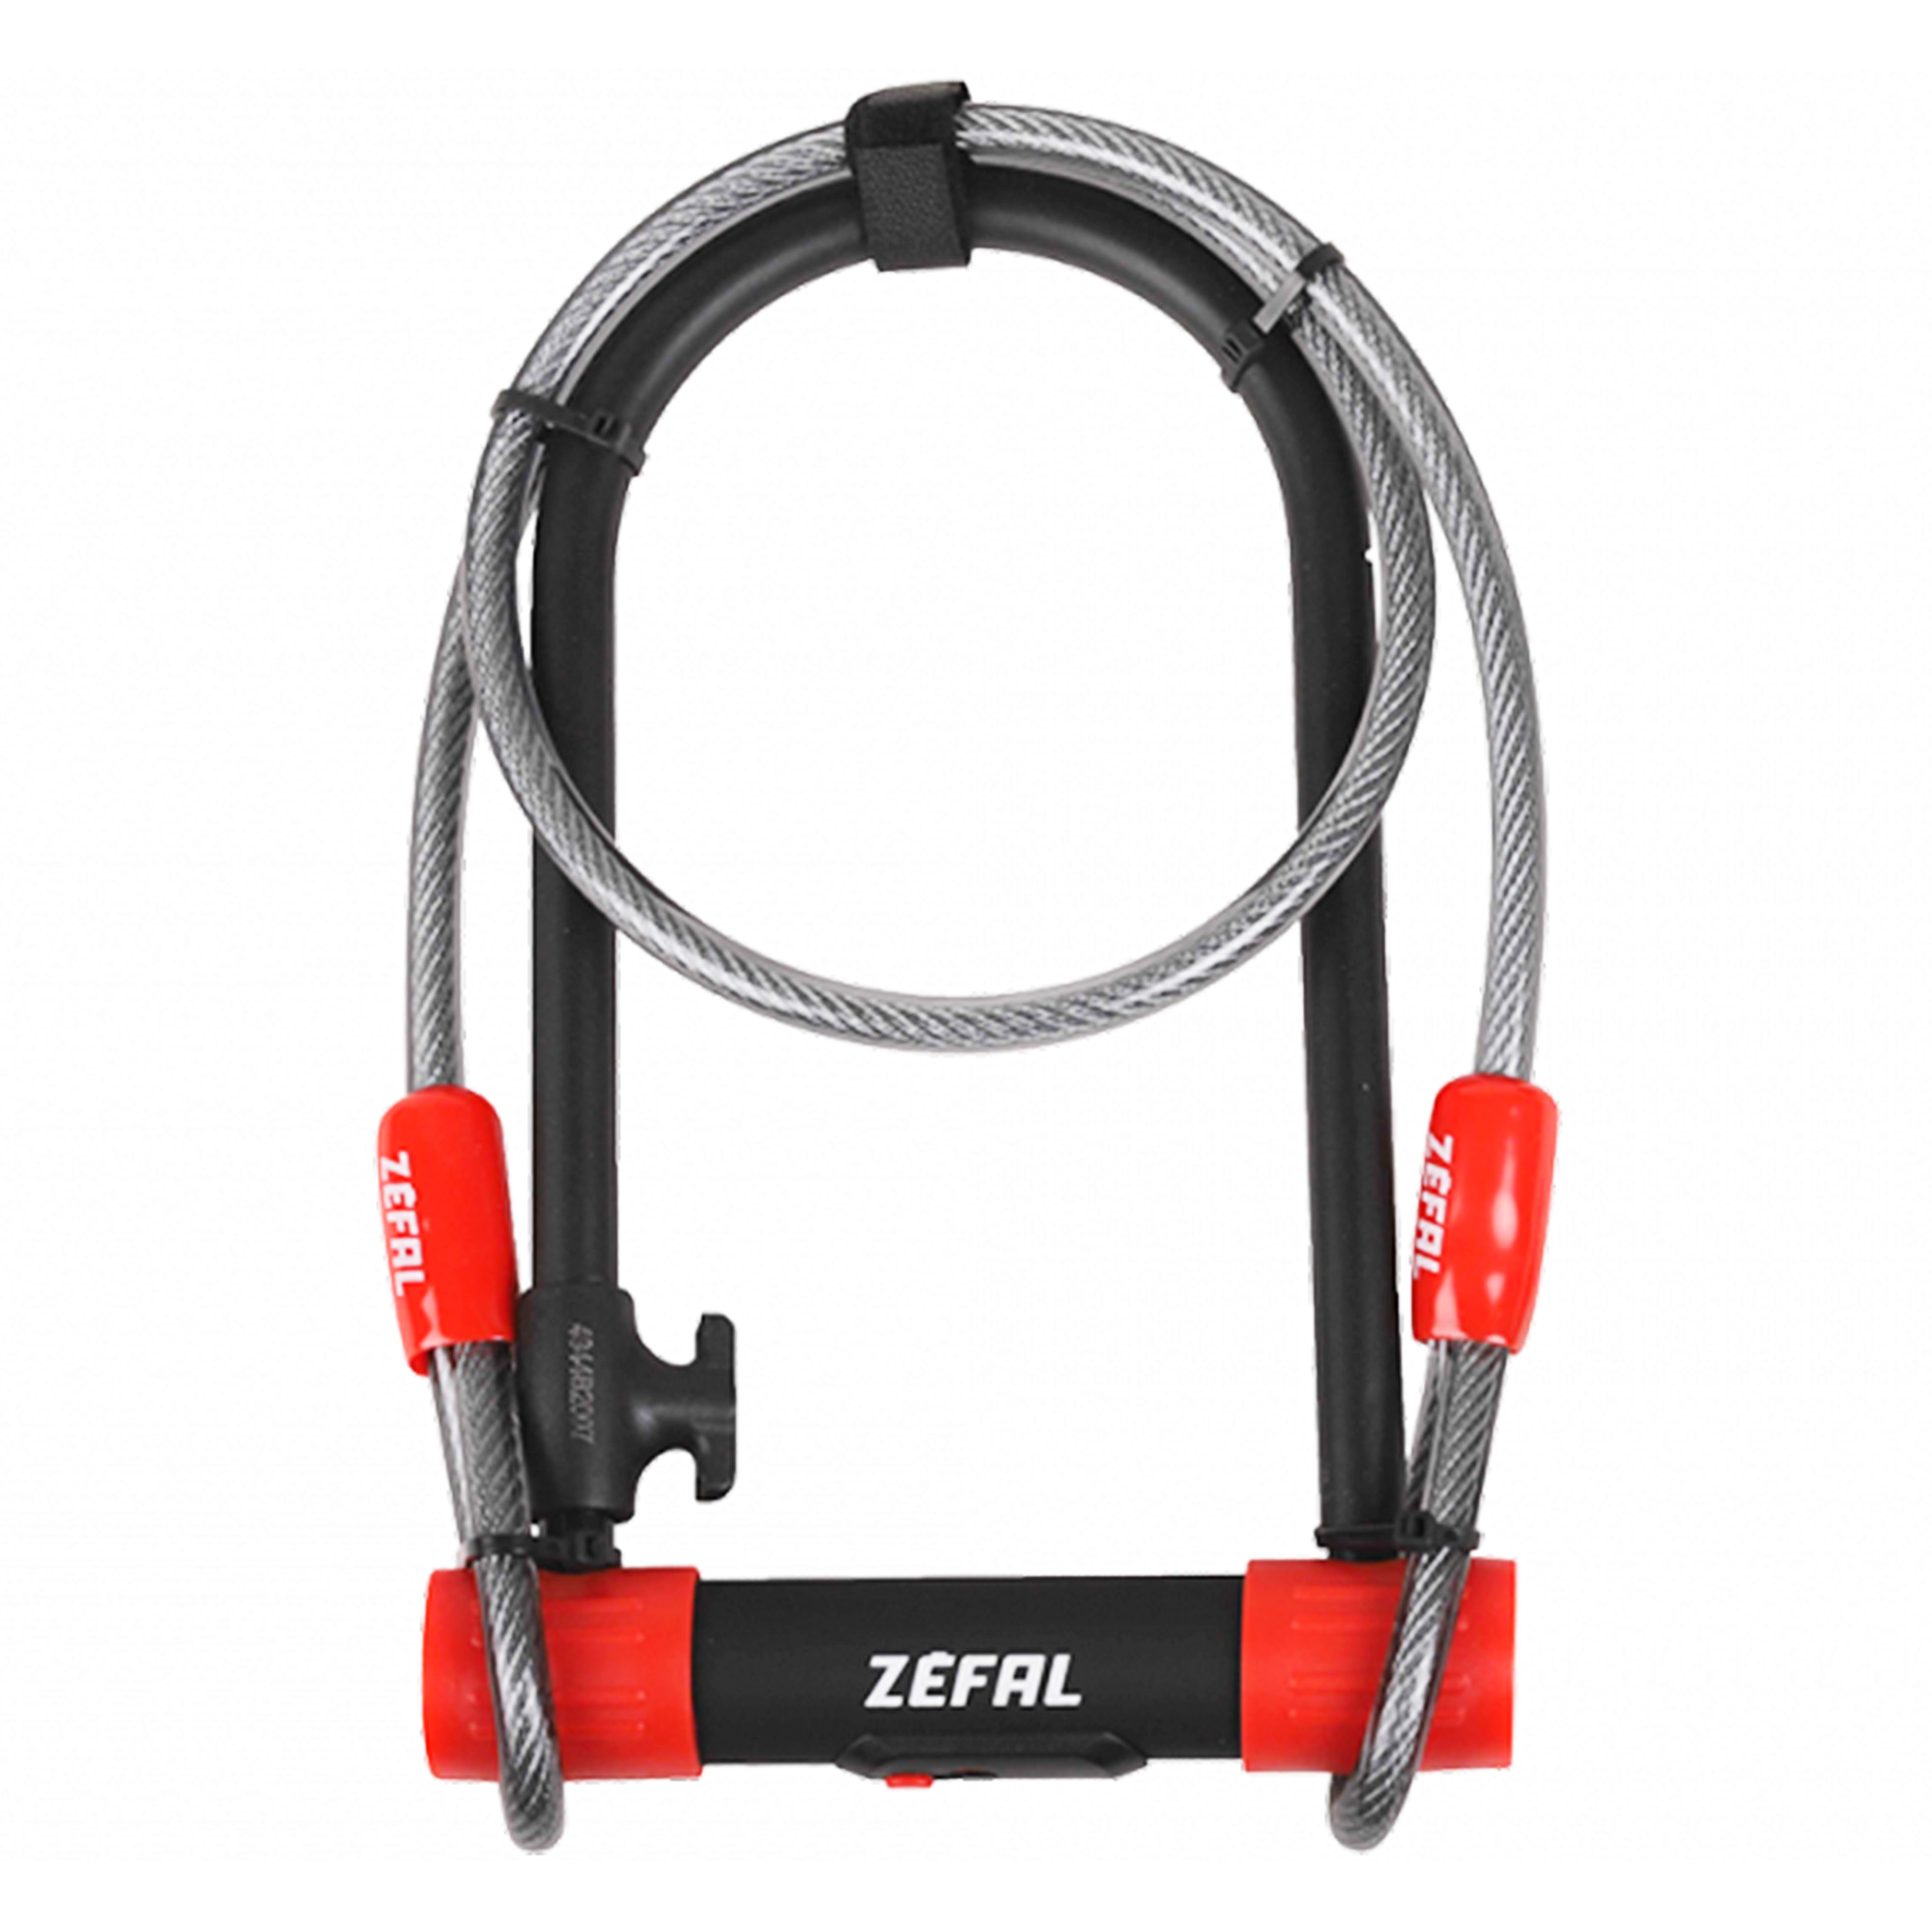 Ciclometa Detalles Candado para bicicleta y ruedas y asiento grosor:13  largo:230mm k-traz con cable Zefal